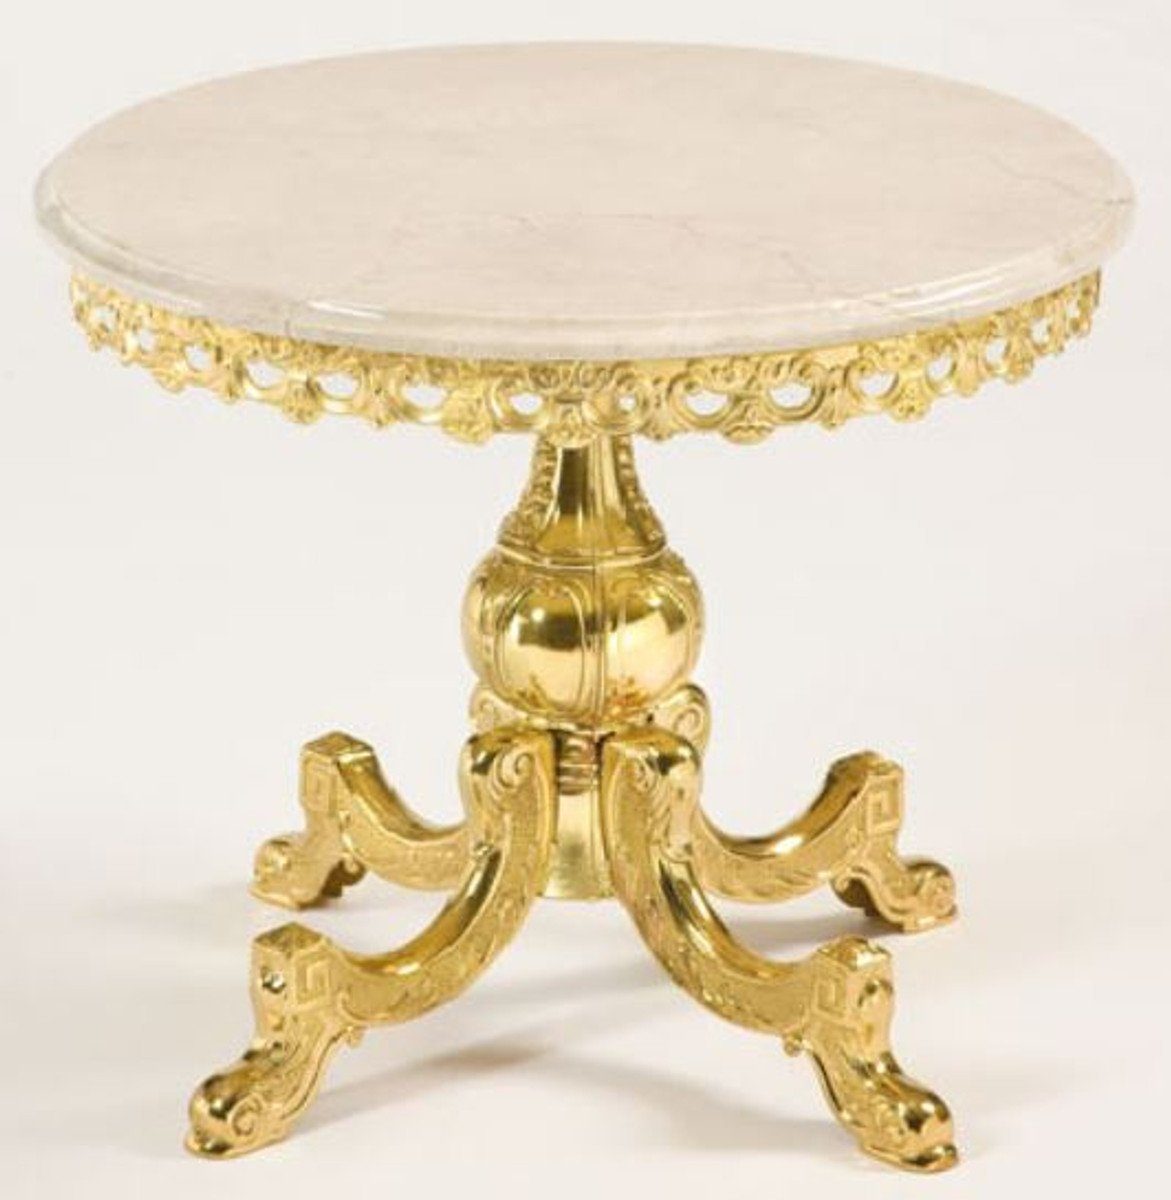 Casa Padrino Beistelltisch Luxus Barock Beistelltisch Gold / Cremefarben Ø 52 x H. 50 cm - Runder Messing Tisch mit Marmorplatte - Barock Möbel - Luxus Qualität